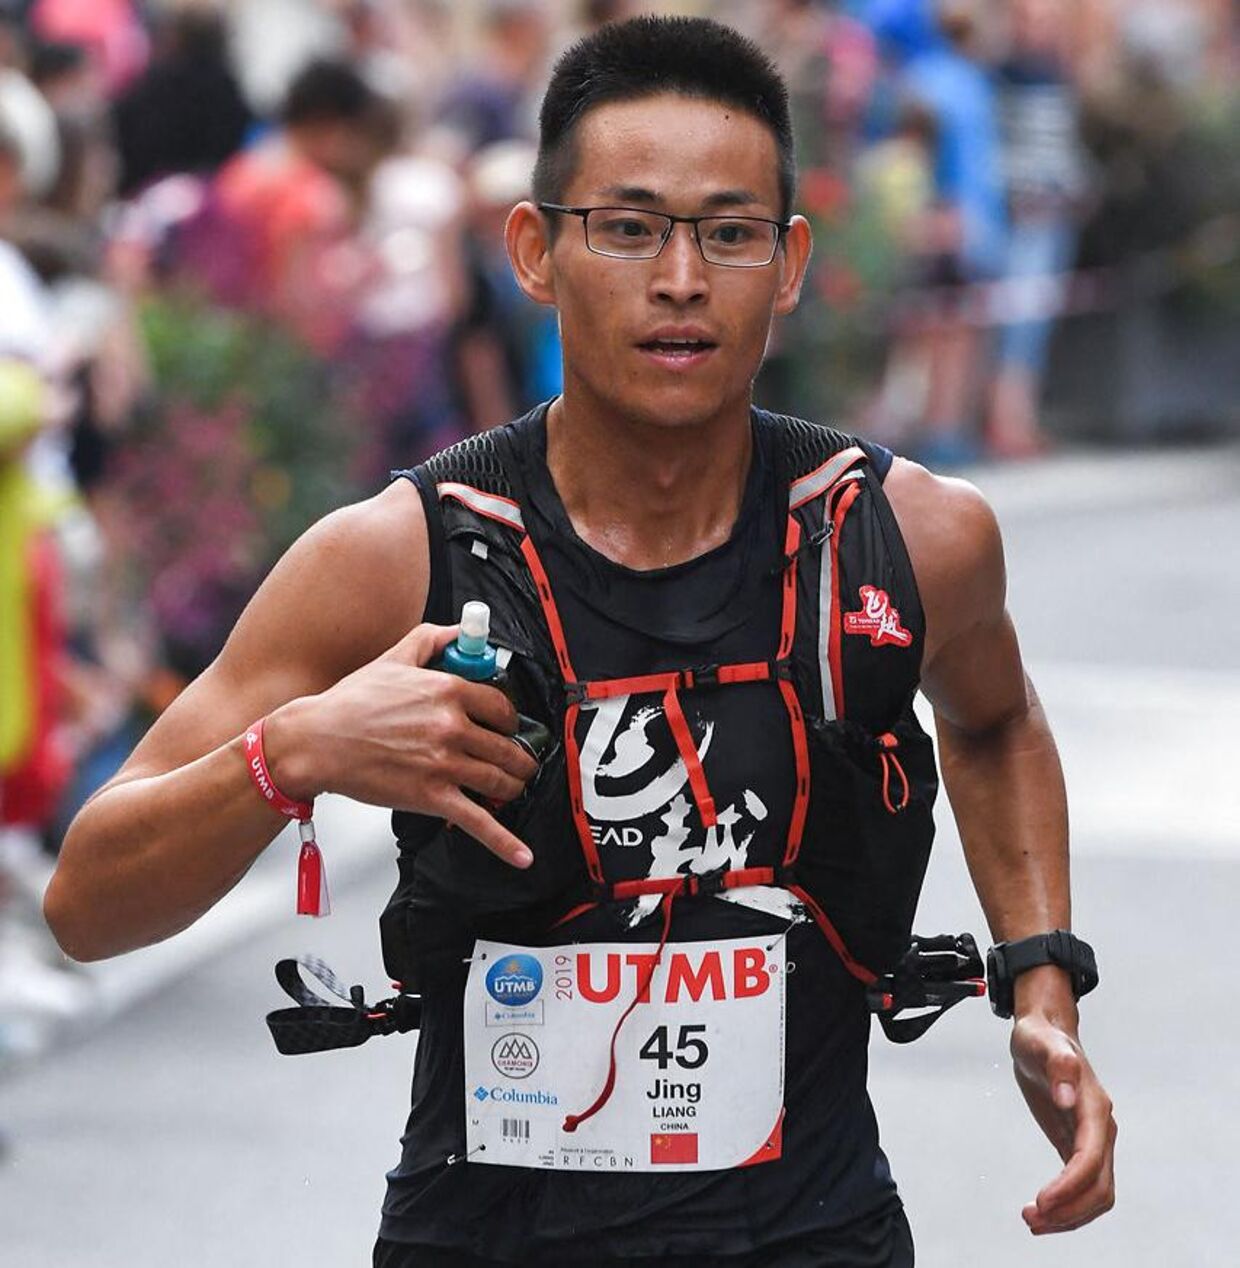 Den kinesiske løber Liang Jing var en af de omkomne i katastrofen.